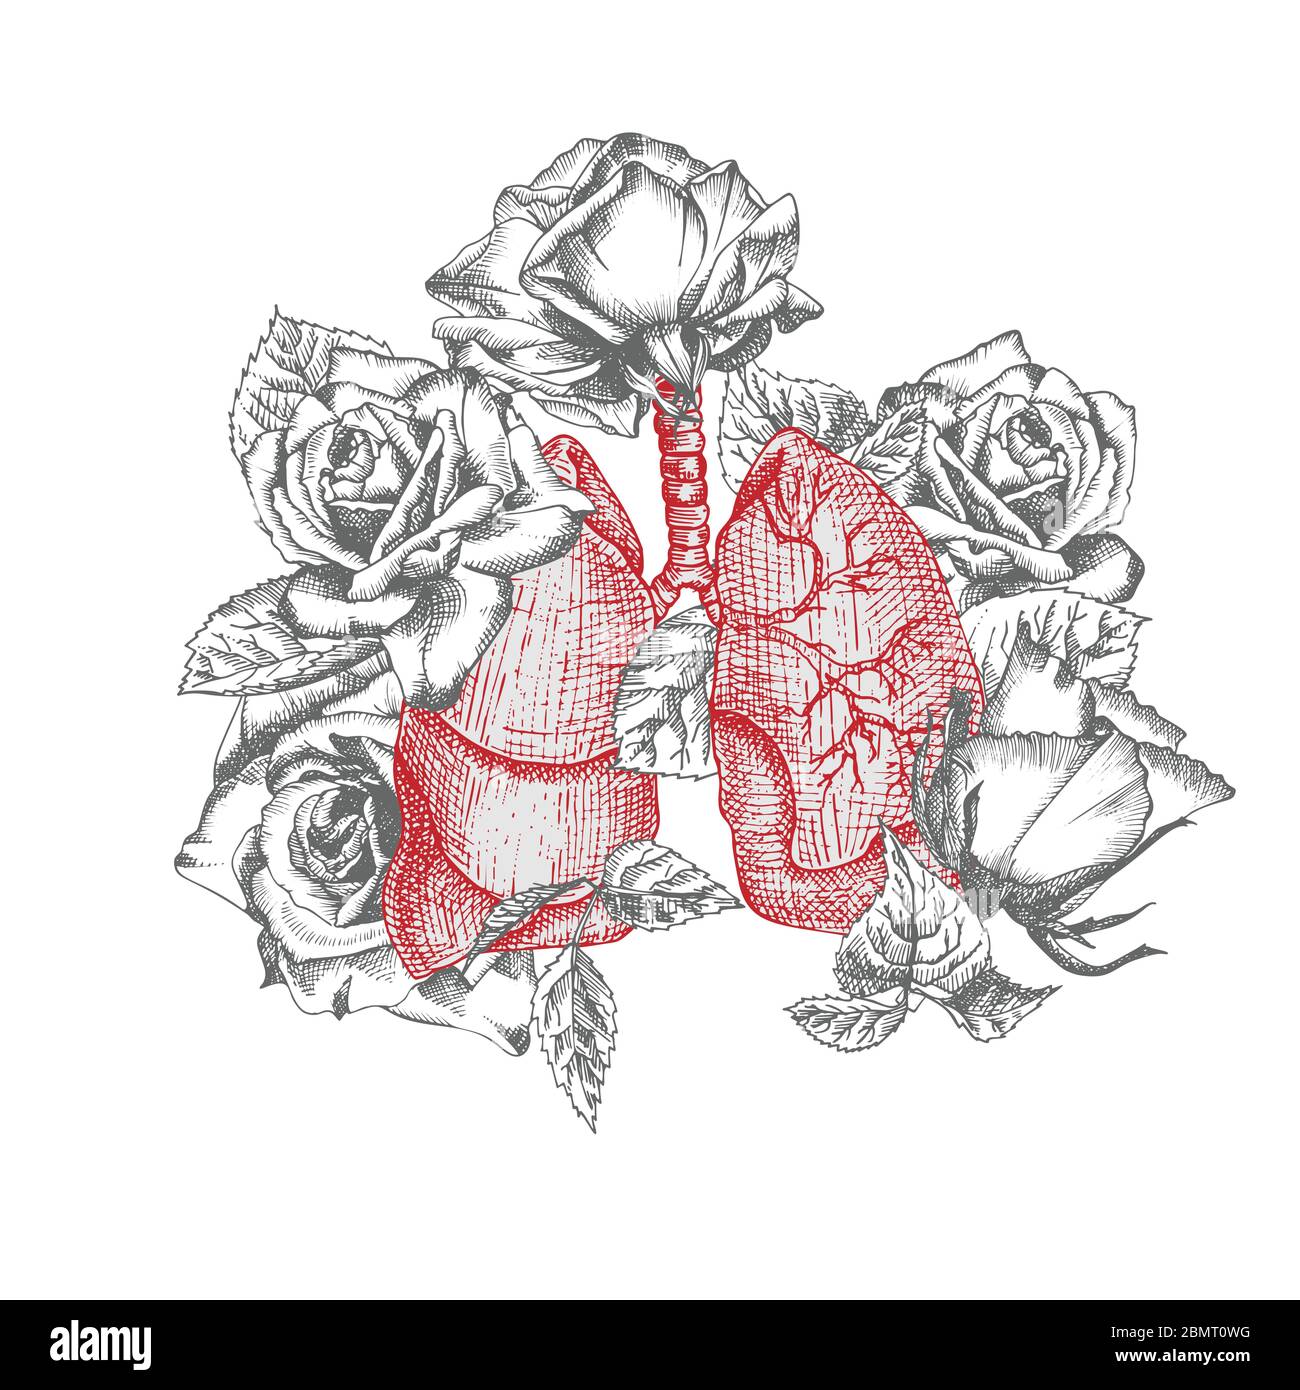 Lungen mit Strauß Rosen realistische handgezeichnete Ikone des menschlichen inneren Organs und des Blumenrahmens. Gravur Kunst. Skizzenstil. Designkonzept für die Medizin Stock Vektor